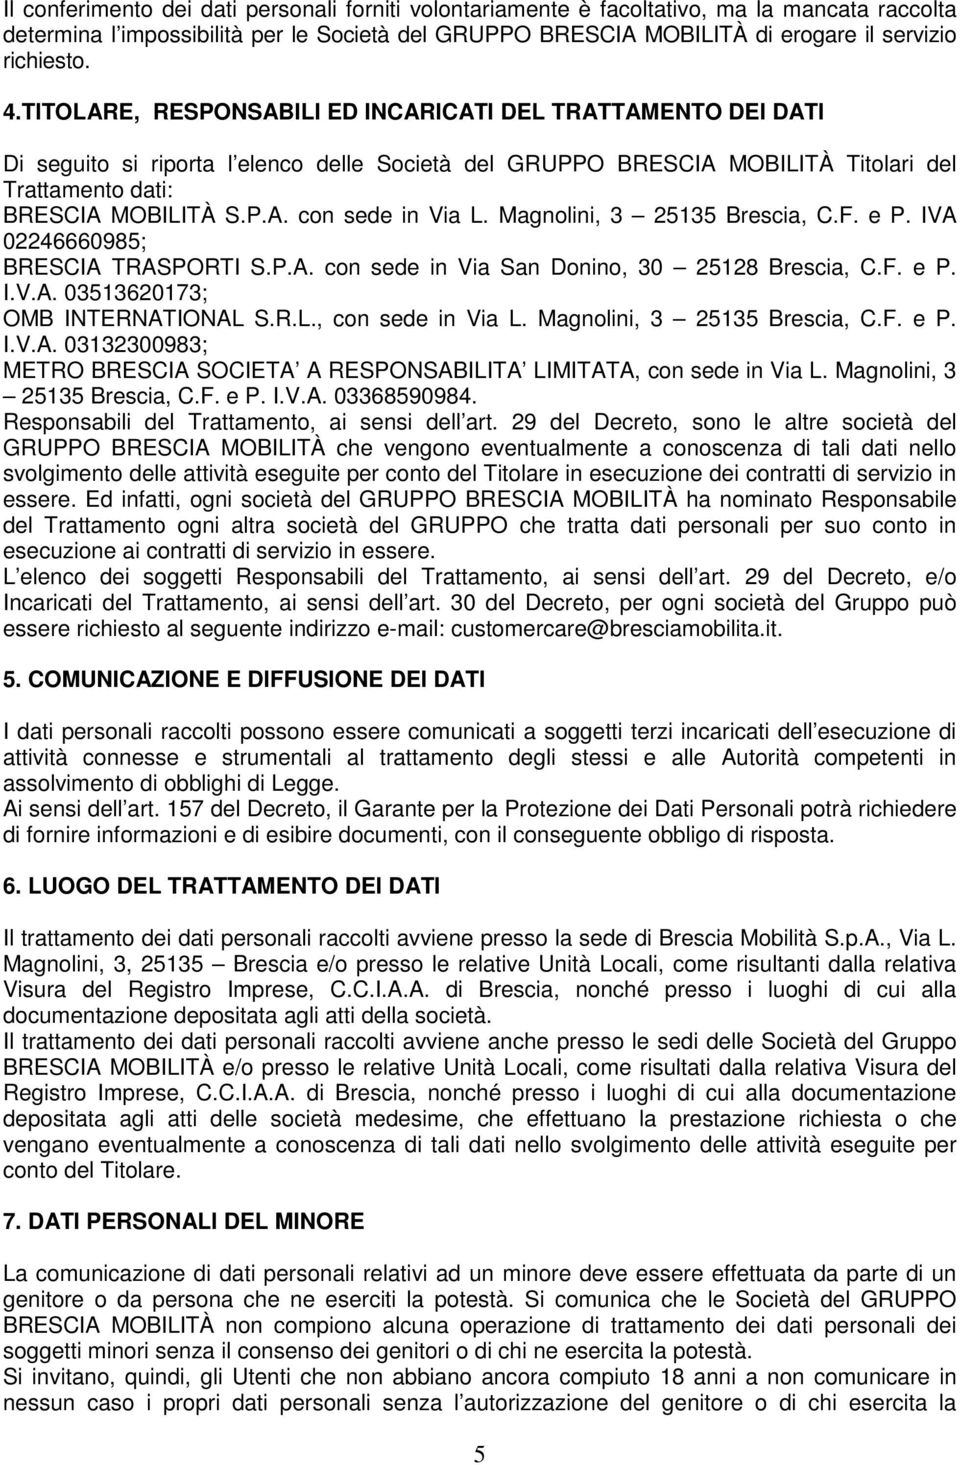 Magnolini, 3 25135 Brescia, C.F. e P. IVA 02246660985; BRESCIA TRASPORTI S.P.A. con sede in Via San Donino, 30 25128 Brescia, C.F. e P. I.V.A. 03513620173; OMB INTERNATIONAL S.R.L., con sede in Via L.